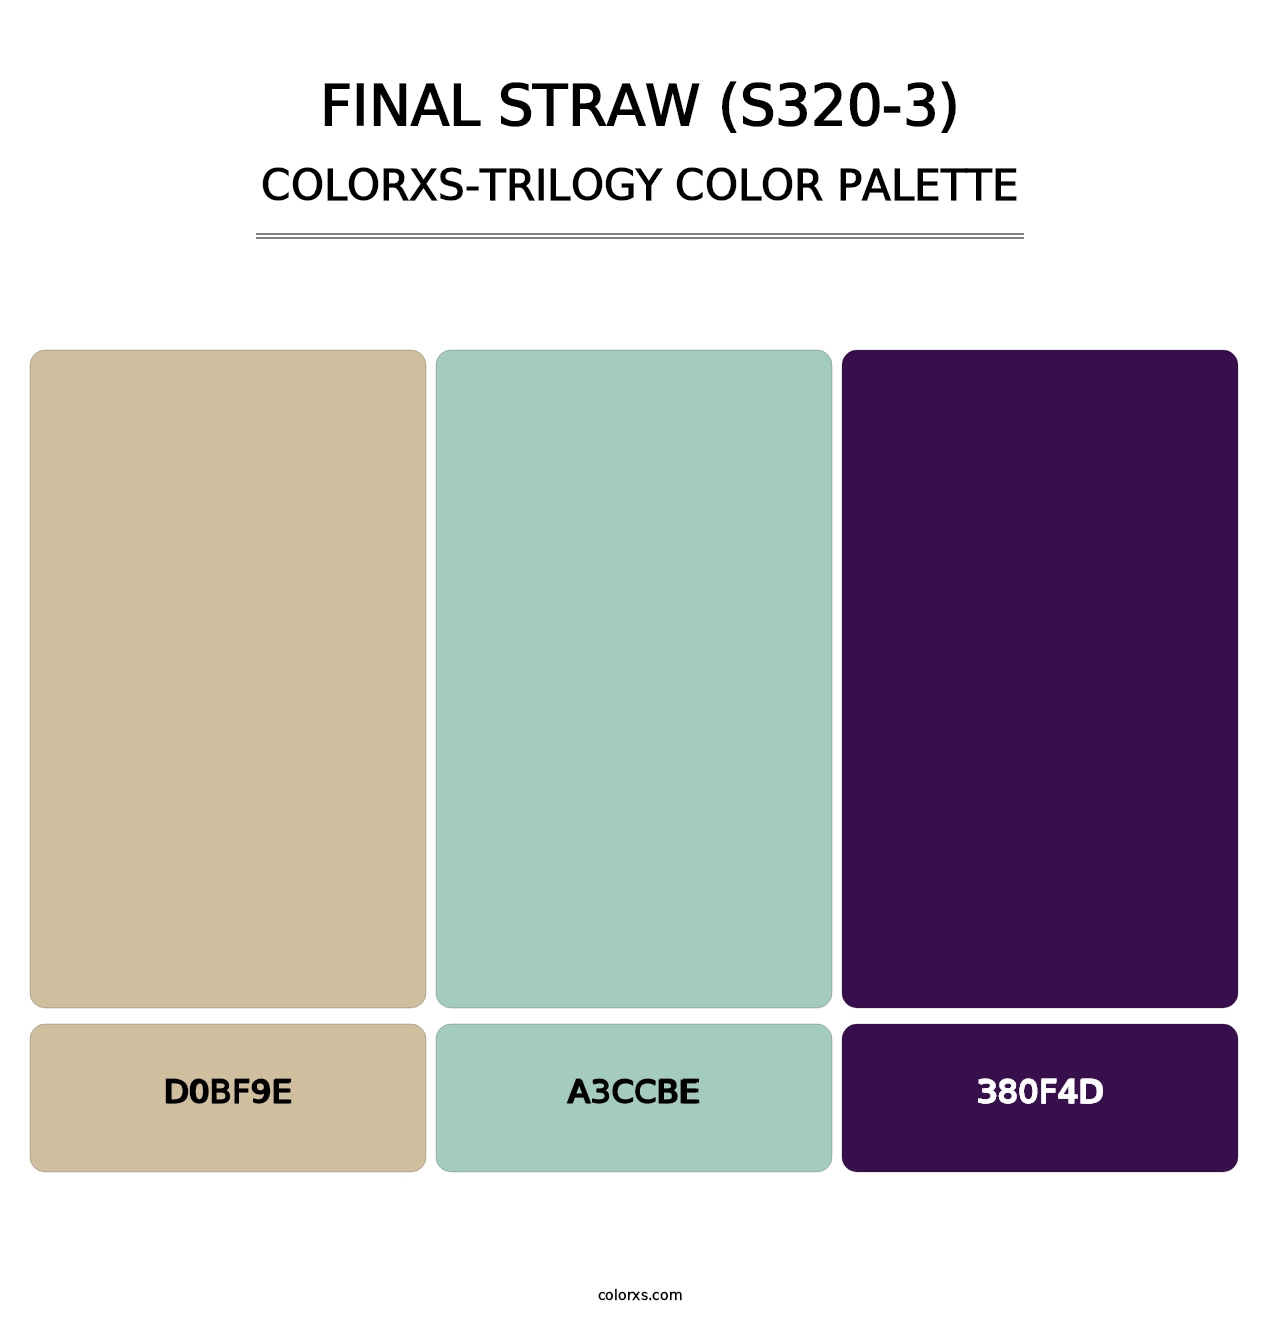 Final Straw (S320-3) - Colorxs Trilogy Palette